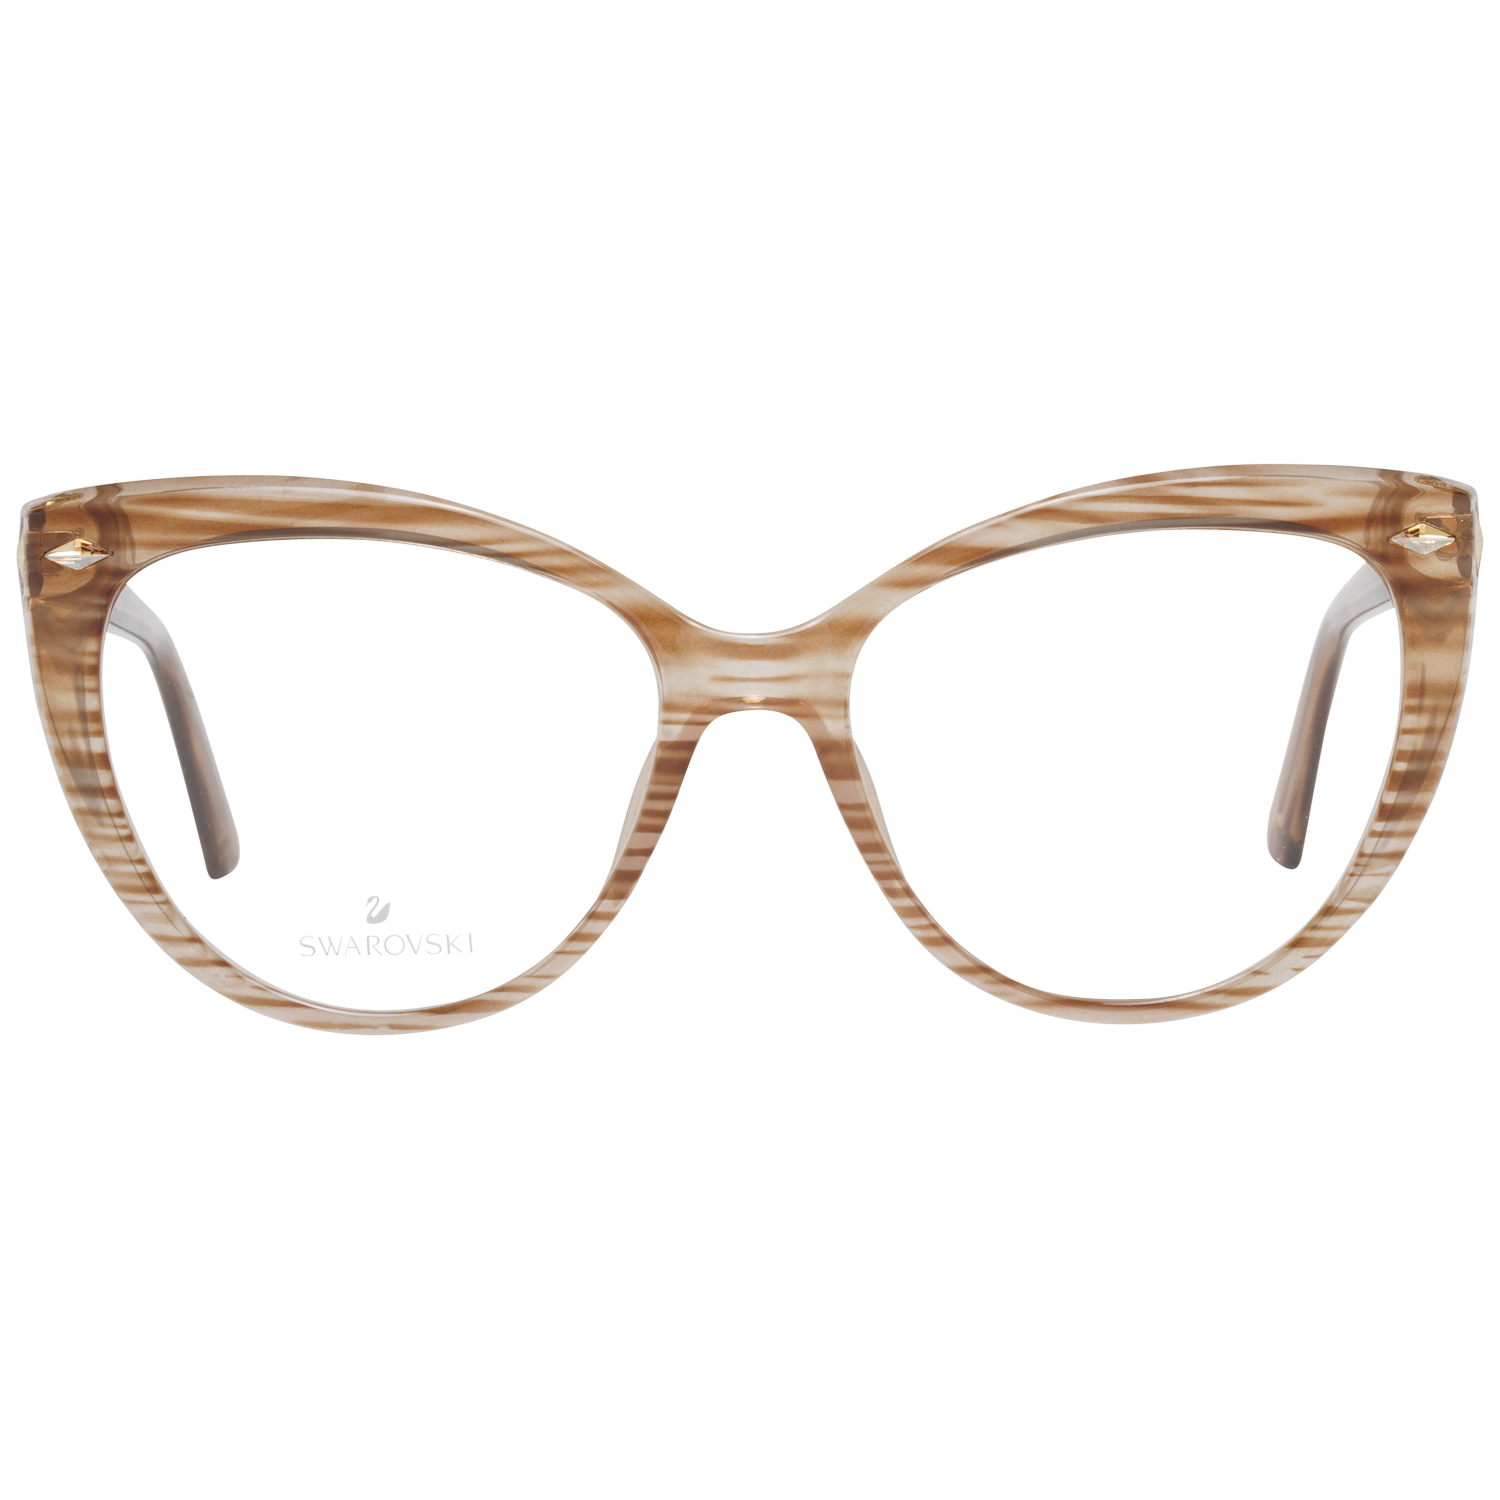 Swarovski Frames Swarovski Women Glasses Optical Frame SK5270 047 53 Eyeglasses Eyewear UK USA Australia 